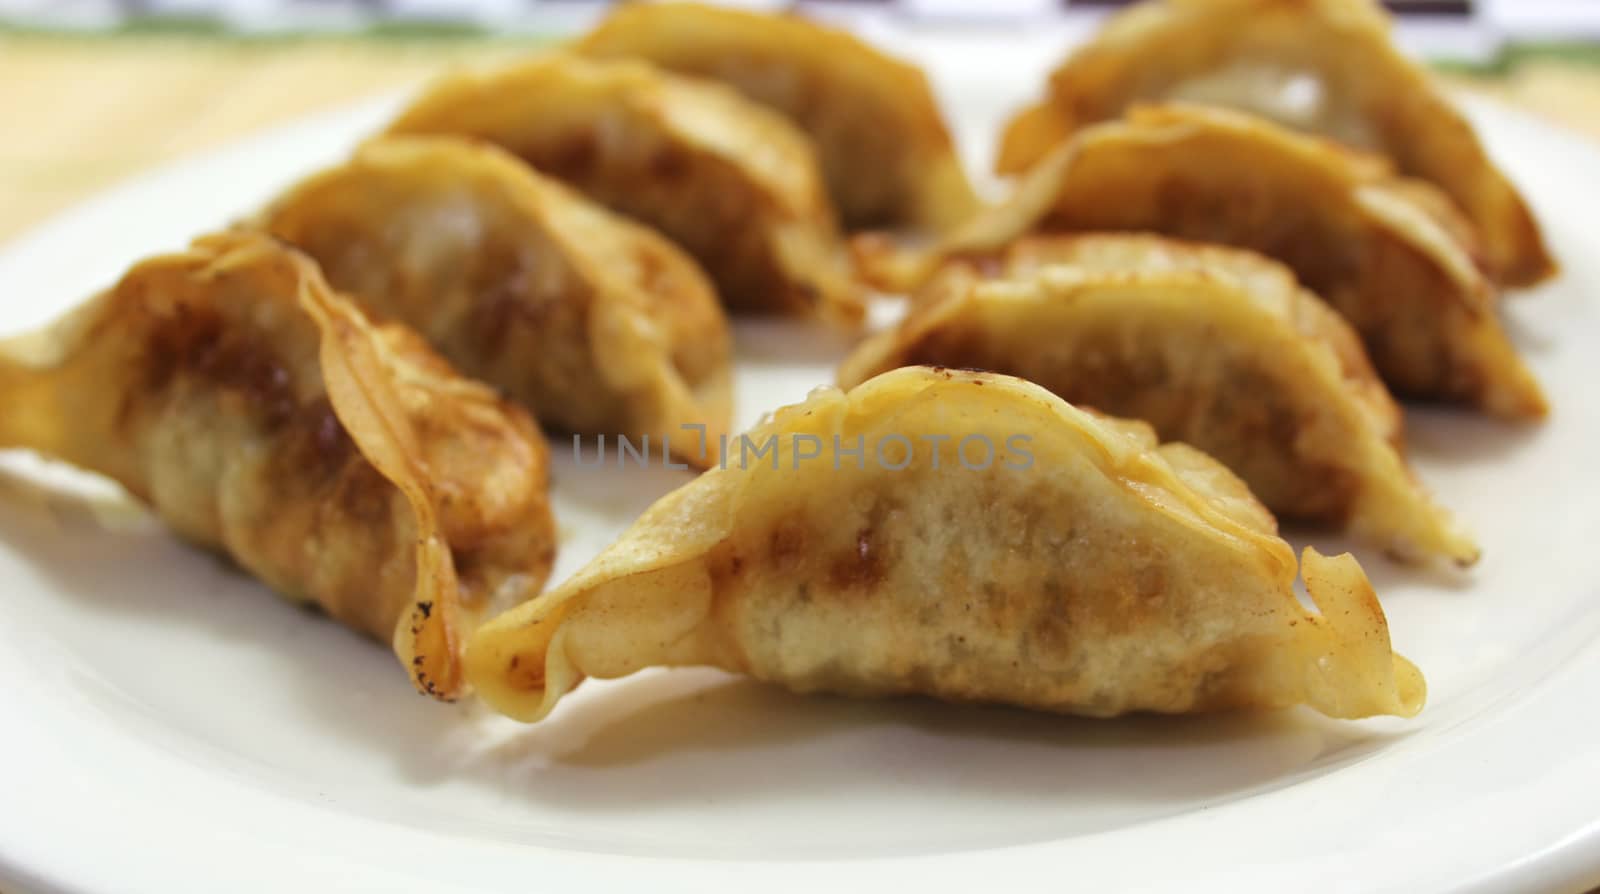 Asian Fried Dumplings by Marti157900